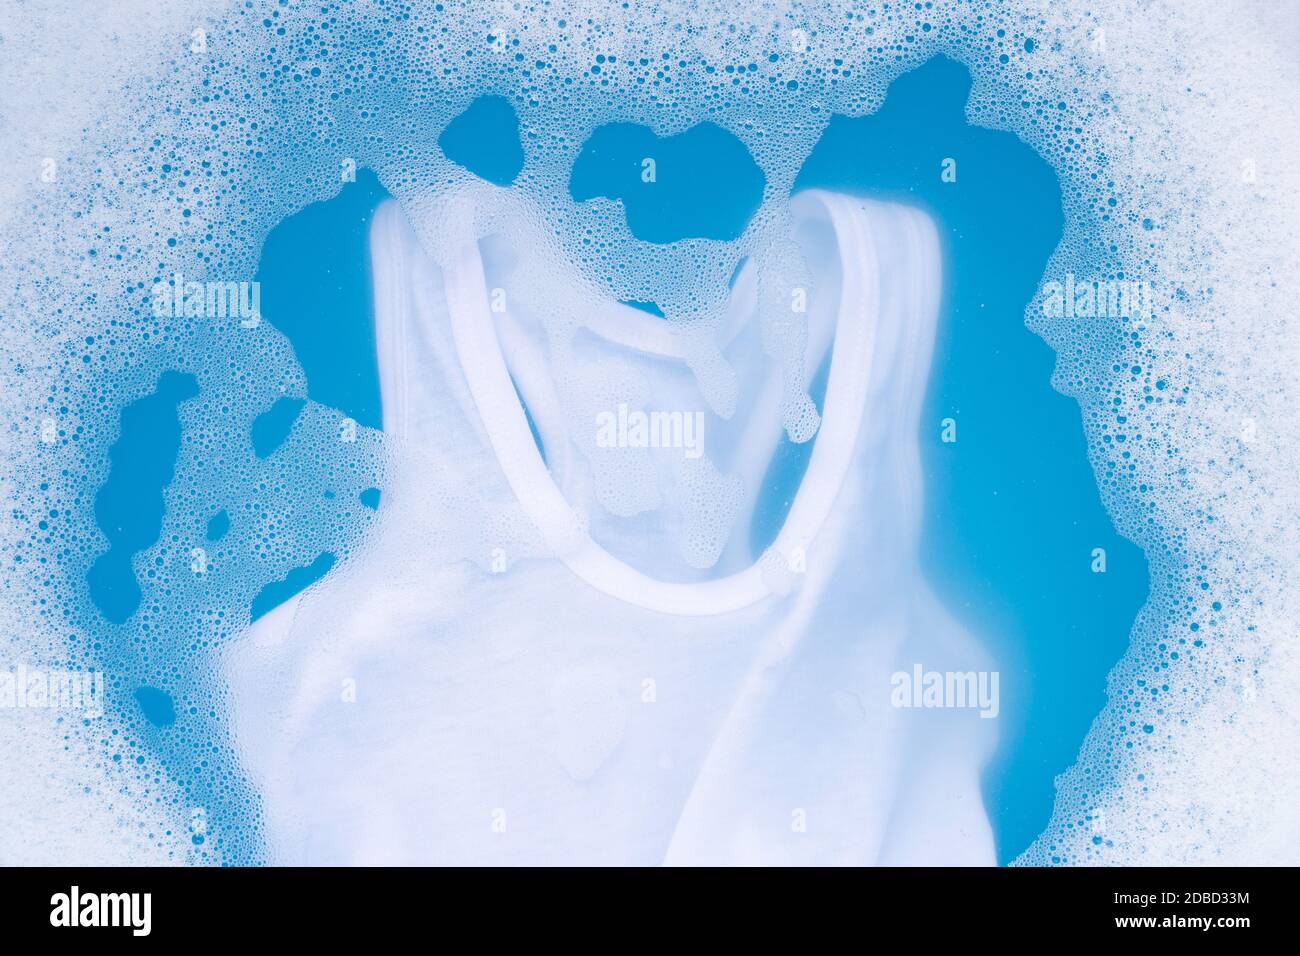 Maillot de chevreau blanc faire tremper dans de l'eau lessive bébé dissolution, lave-linge, fond bleu, concept de blanchisserie. Banque D'Images